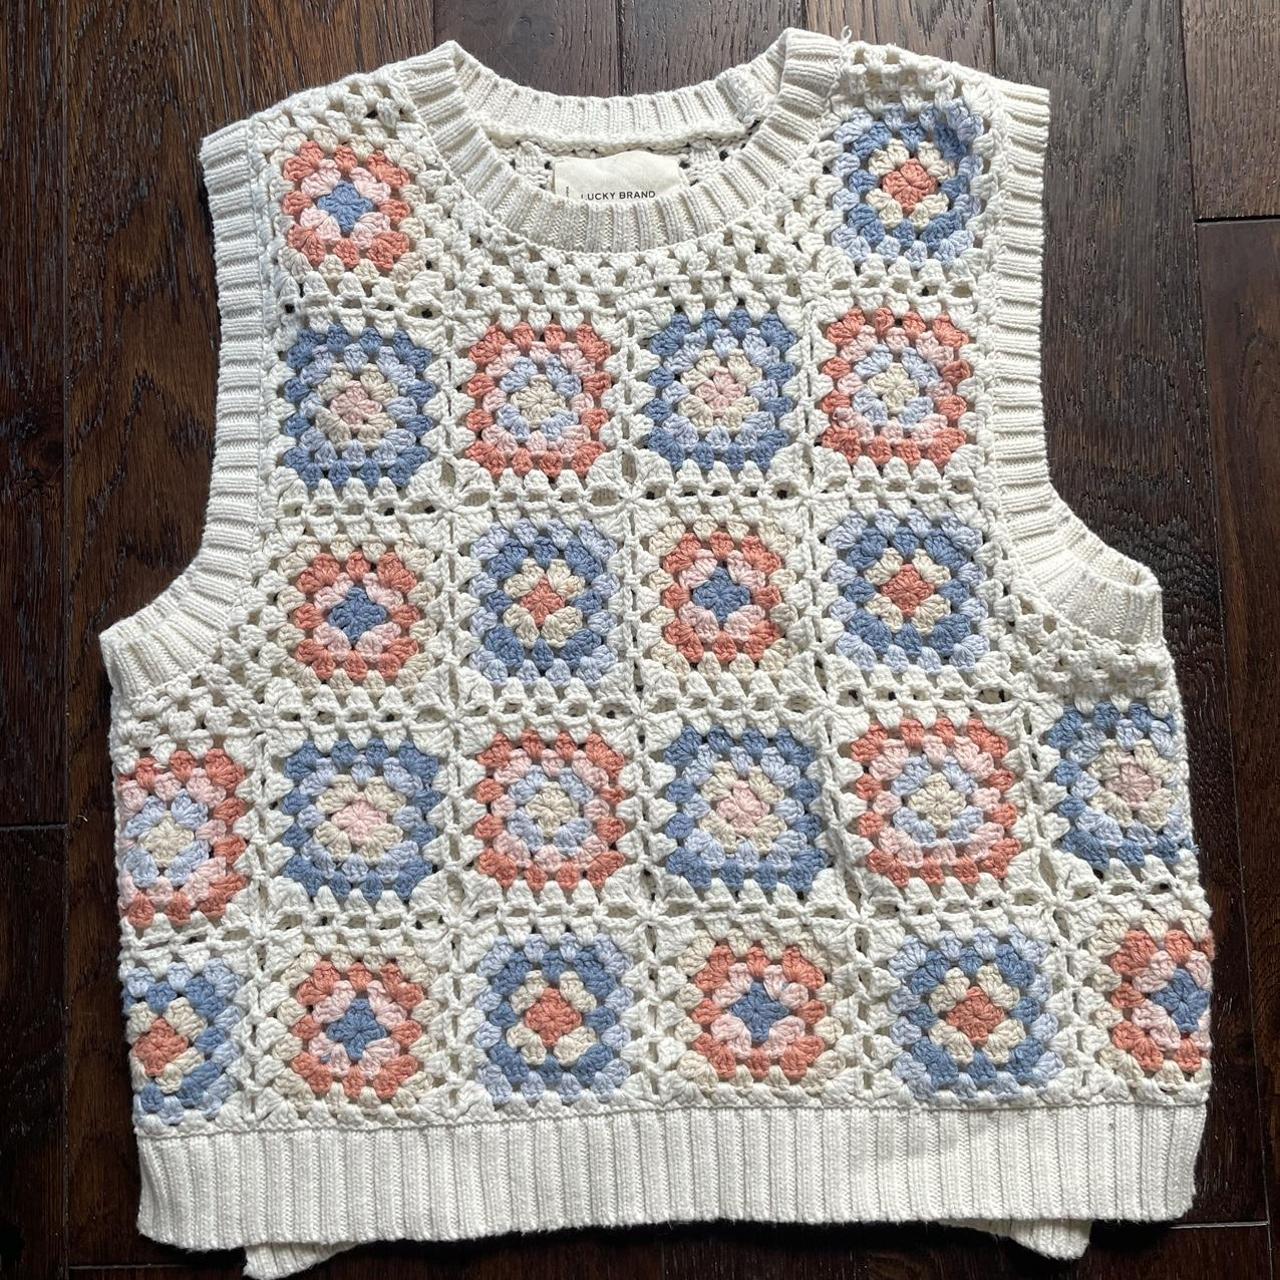 Lucky Brand Crochet Vest.